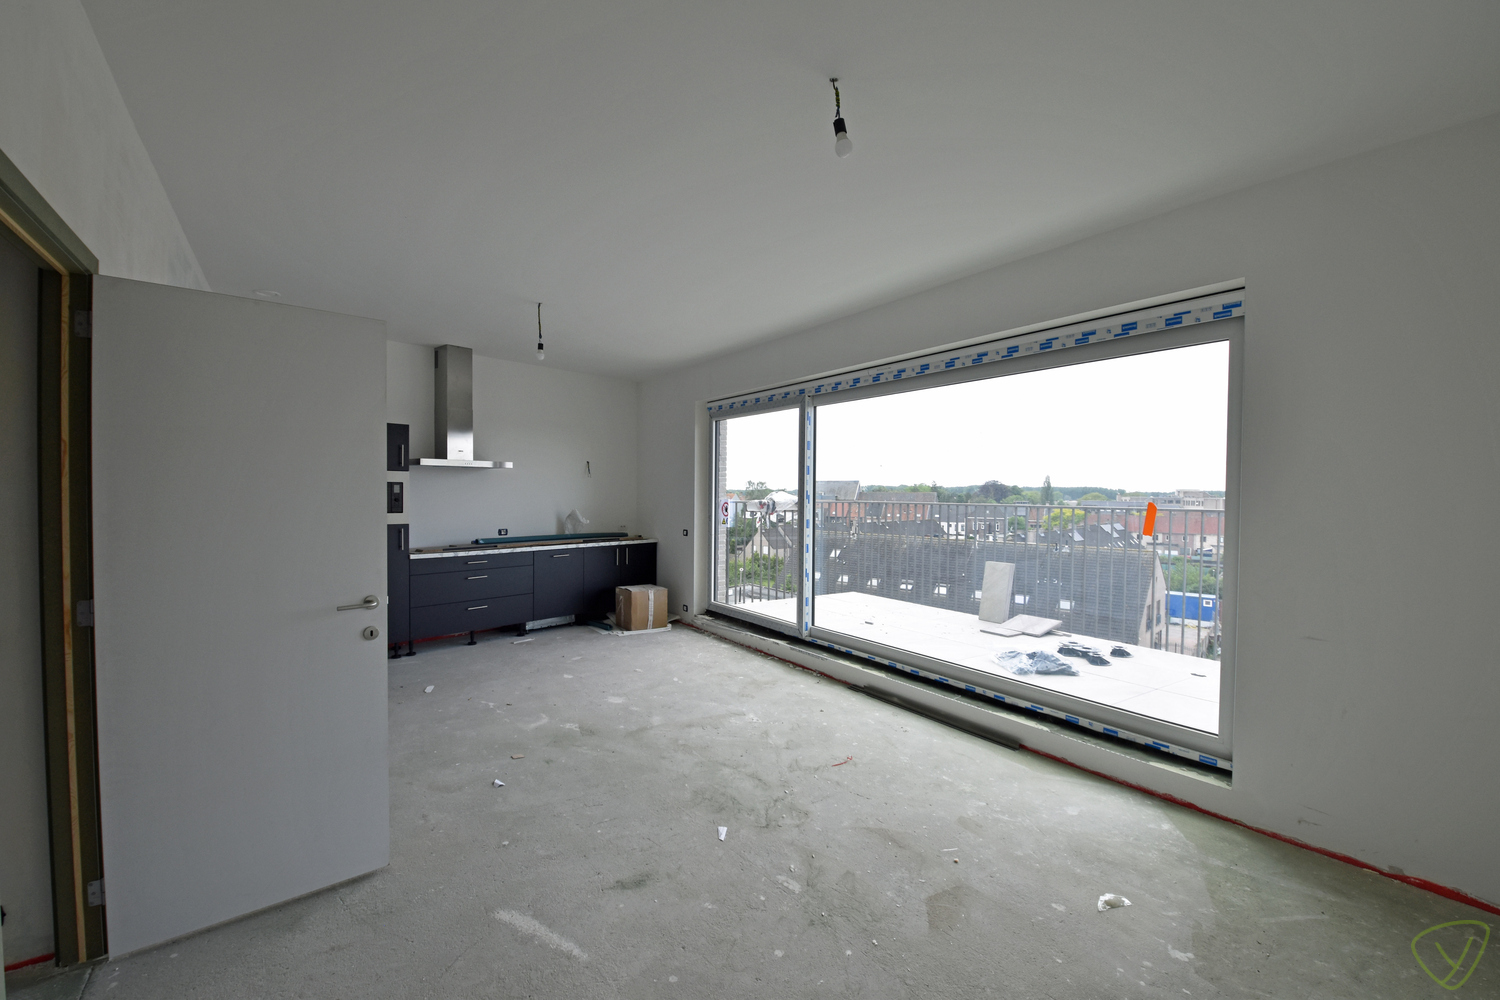 Exclusief appartement te koop in de residentie "Molenpark" gelegen op de Molenstraat foto 4